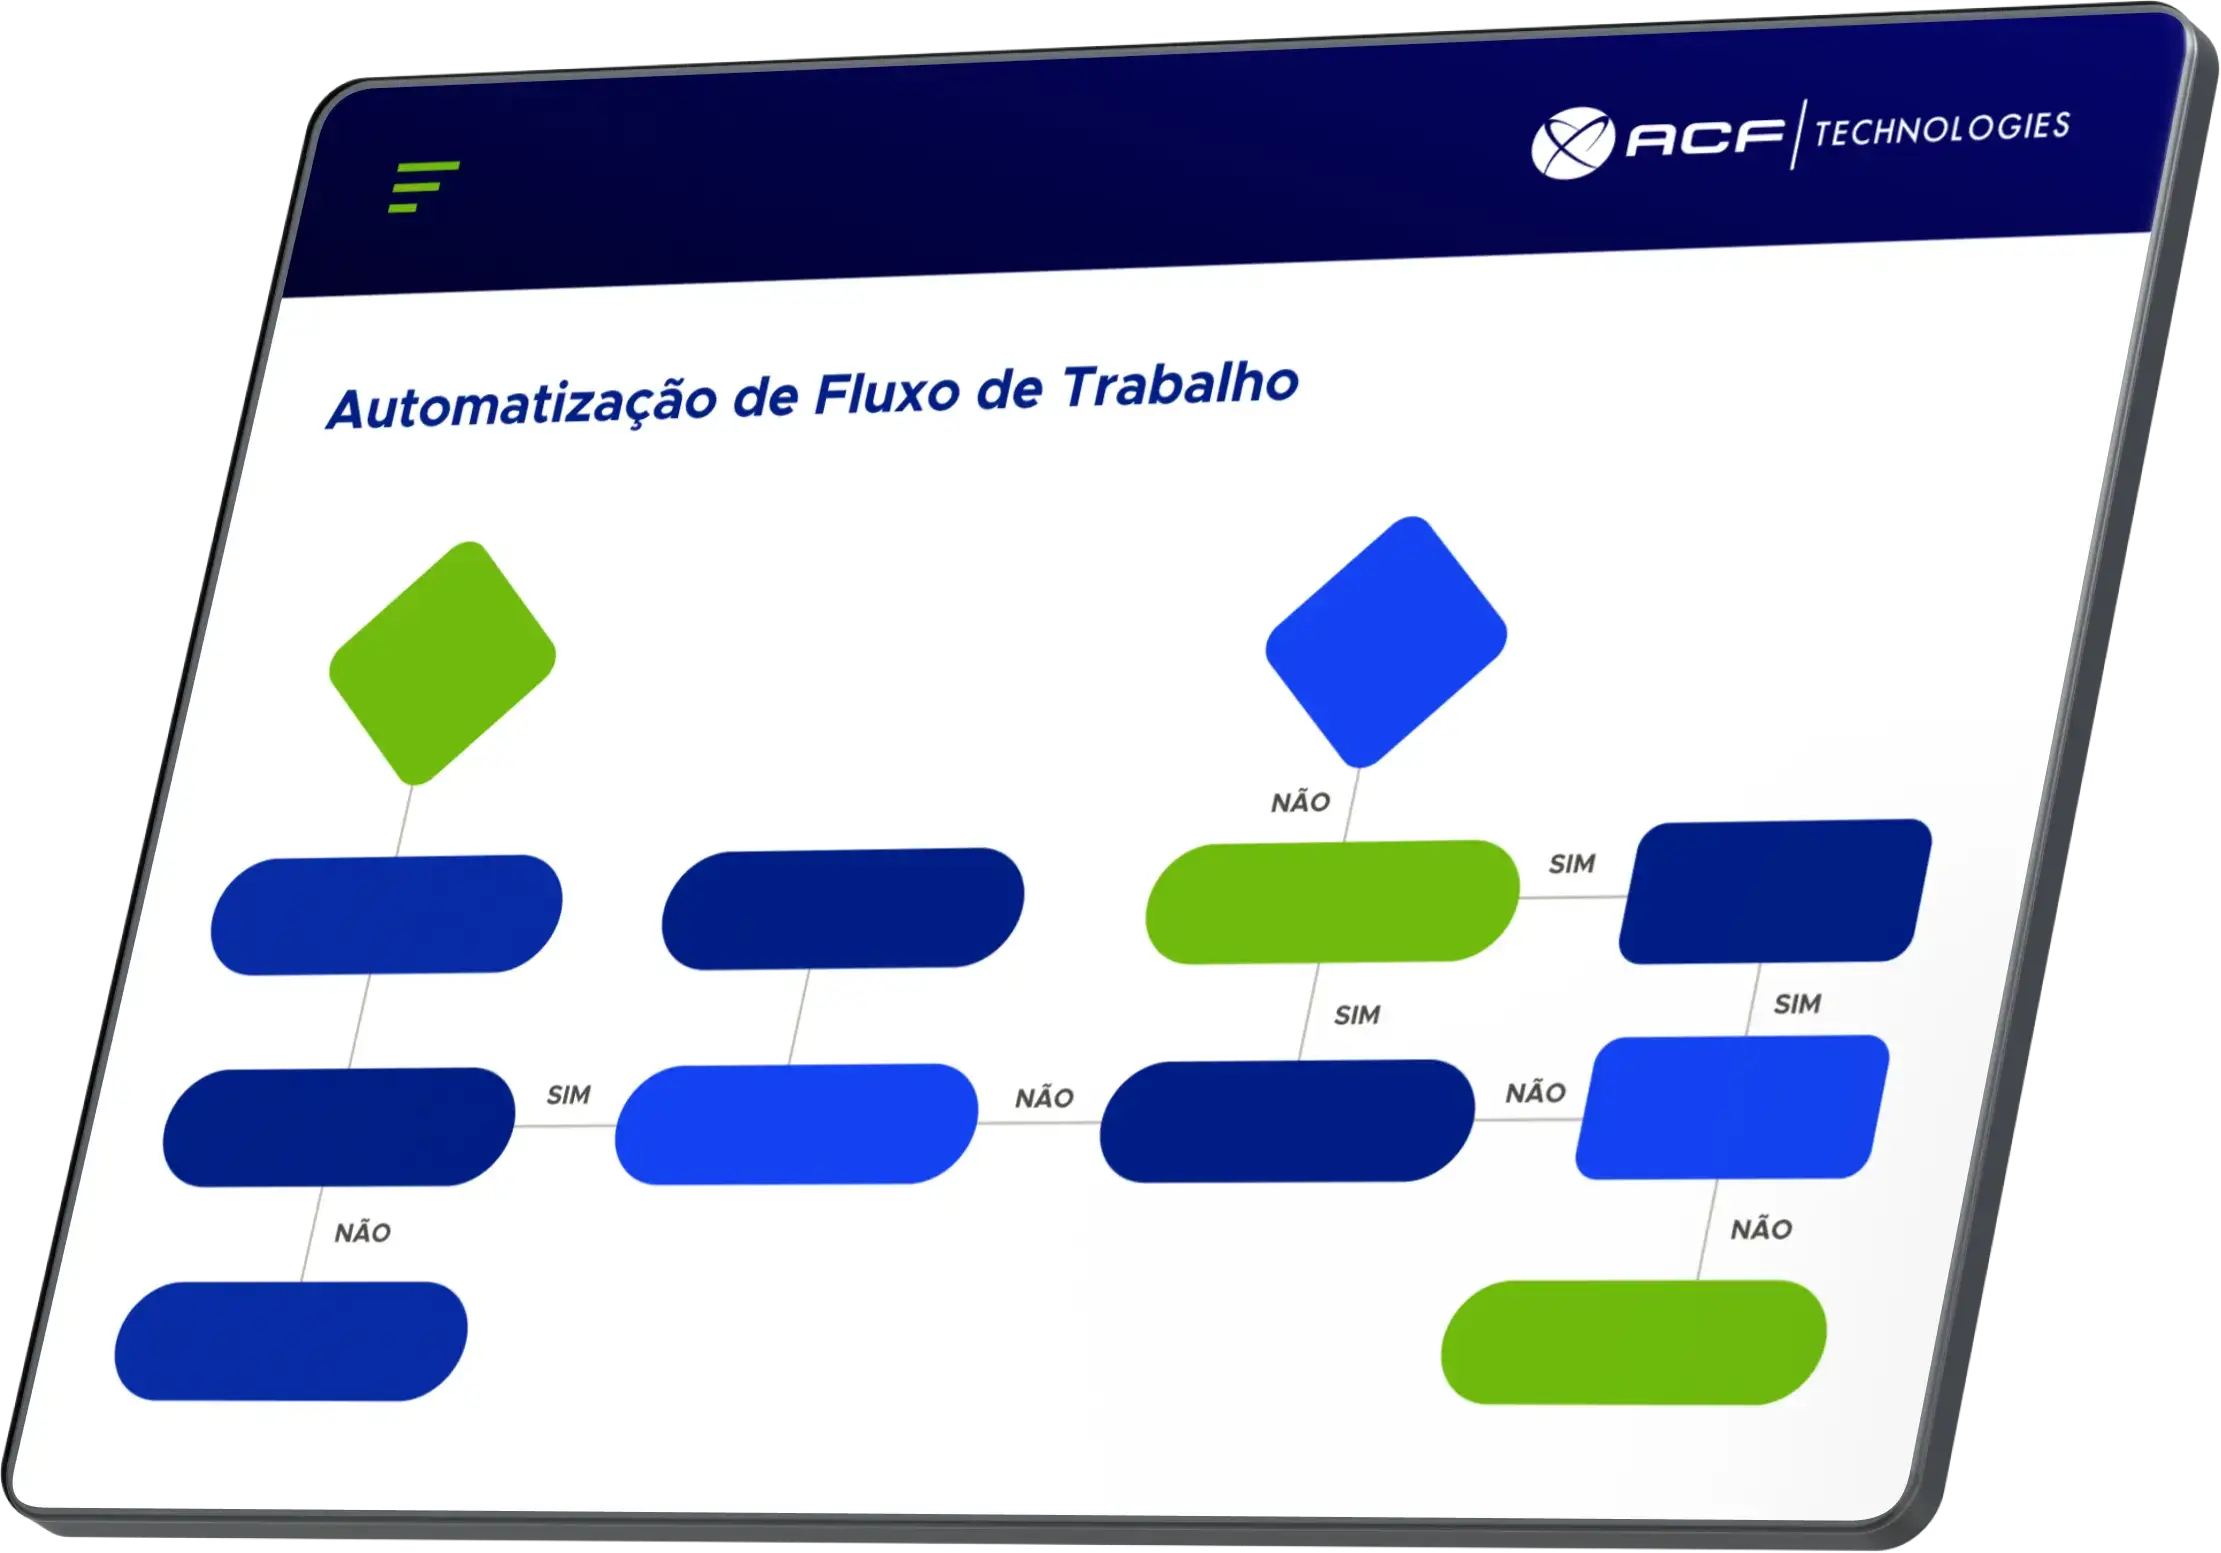 Tela de automação do fluxo de trabalho da ACF Technologies